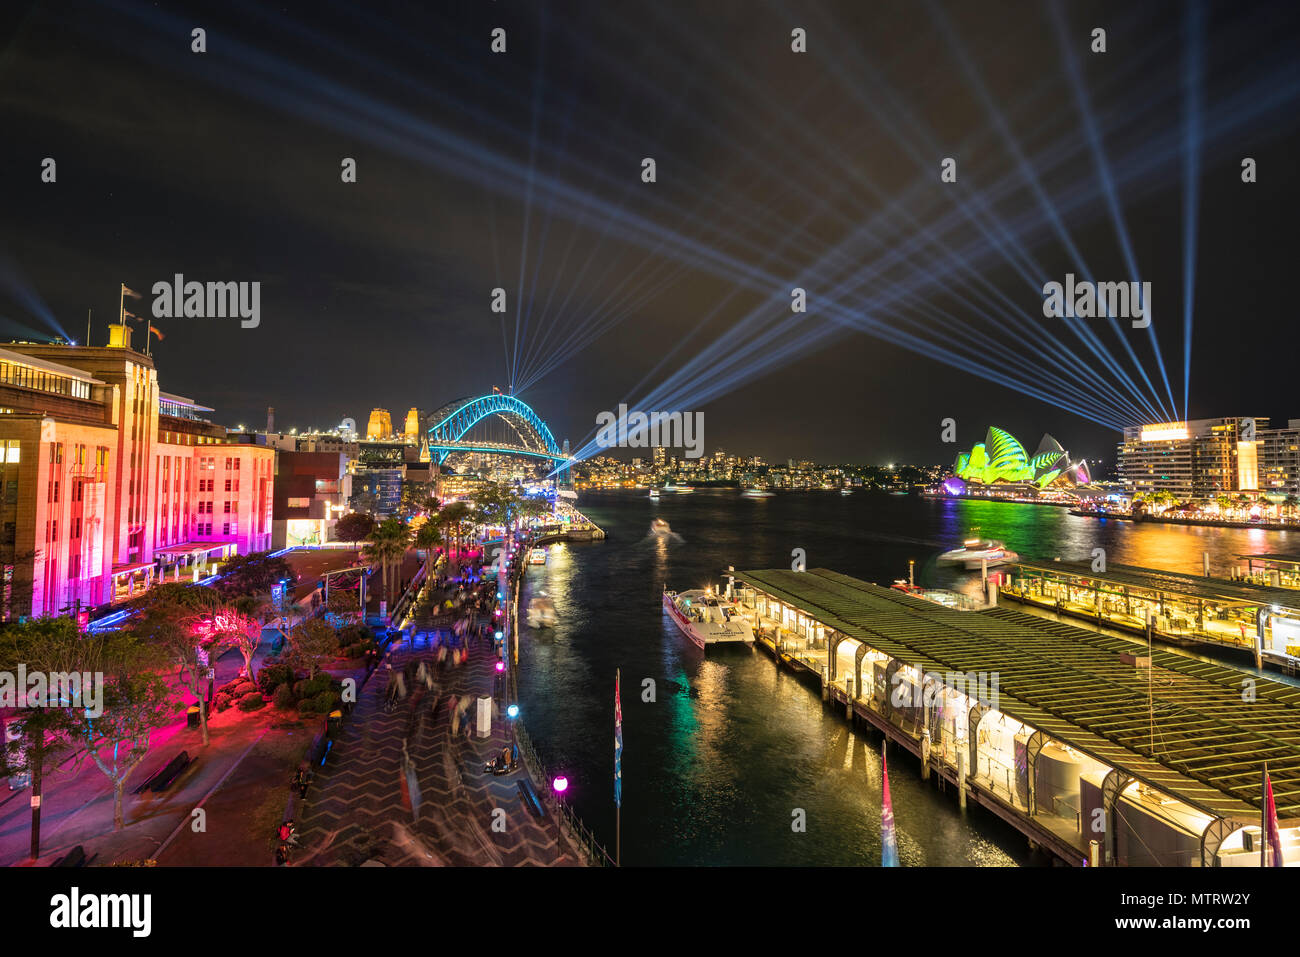 Vivid Sydney - Licht, Musik und Ideen Festival, Sydney Harbour Bridge und das Opernhaus vom Circular Quay, Australien Stockfoto